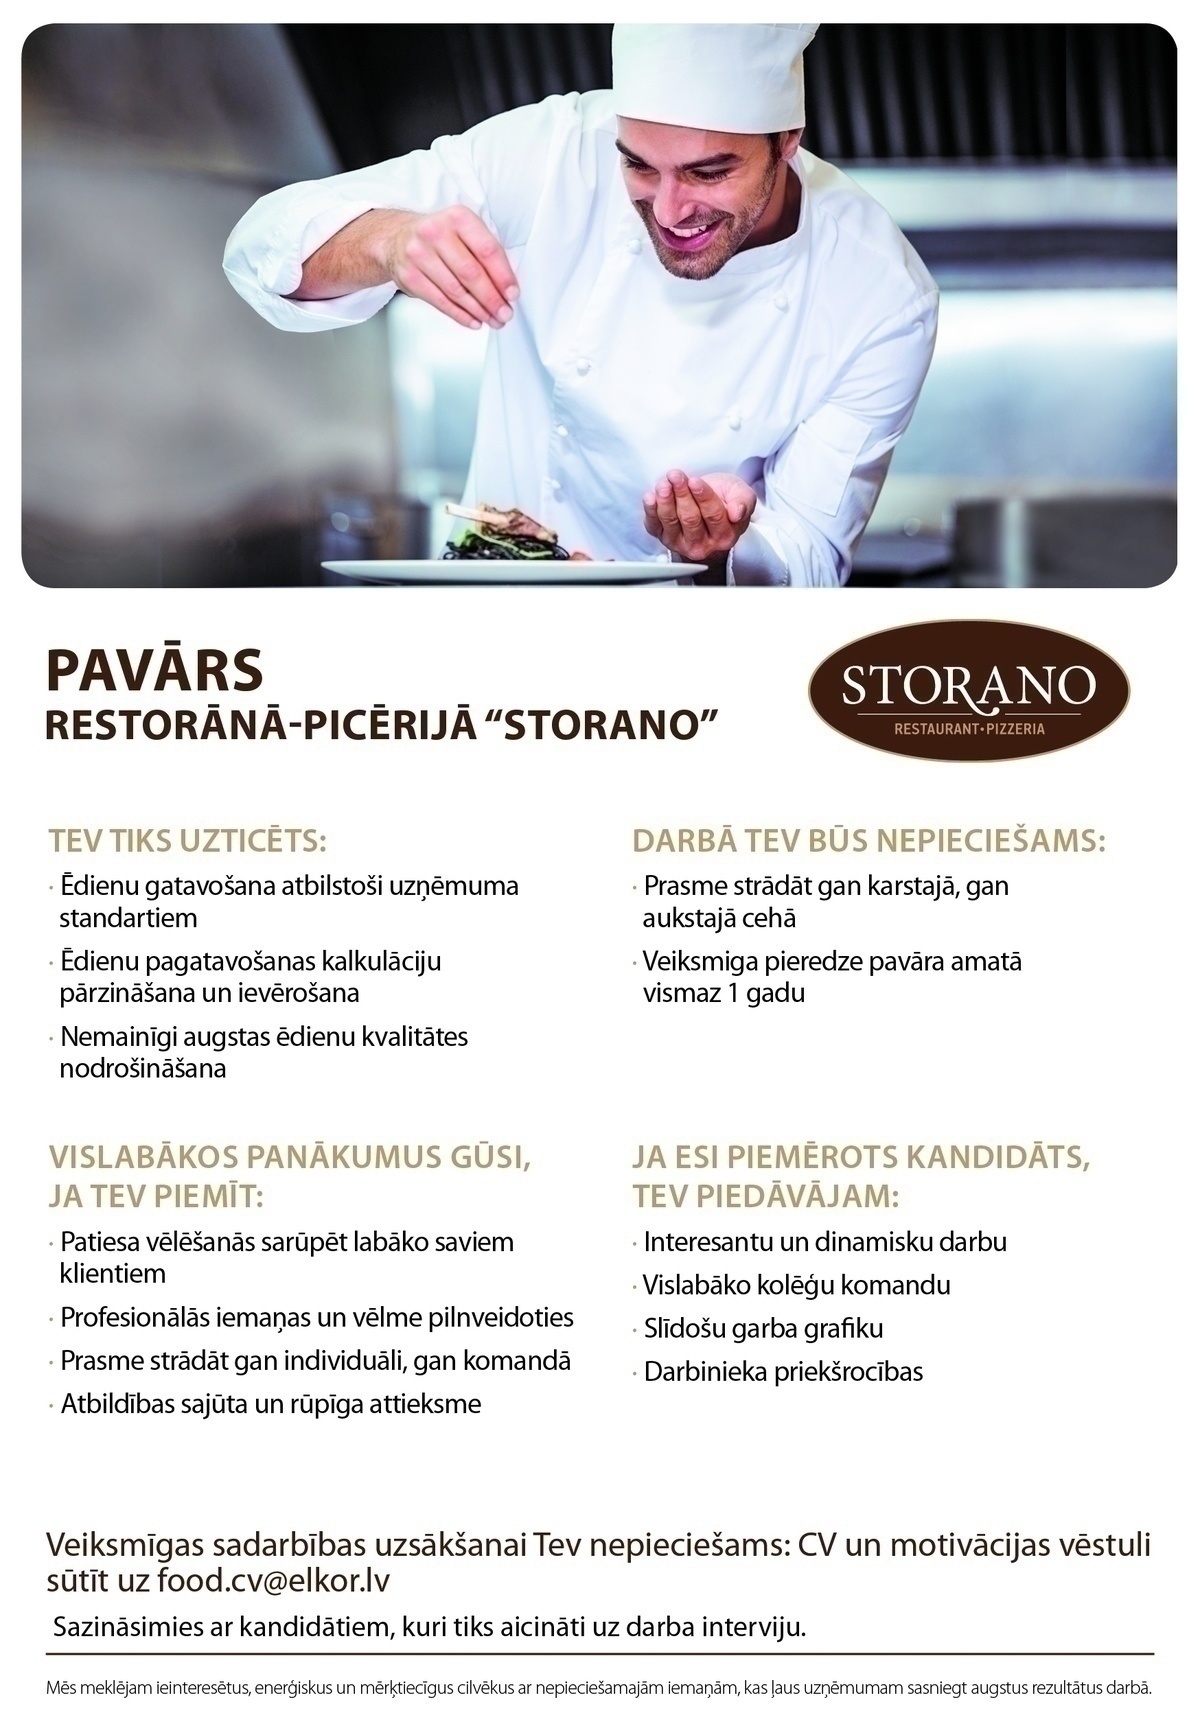 CVMarket.lv klients PAVĀRS/-E restorānā-picērijā "STORANO"